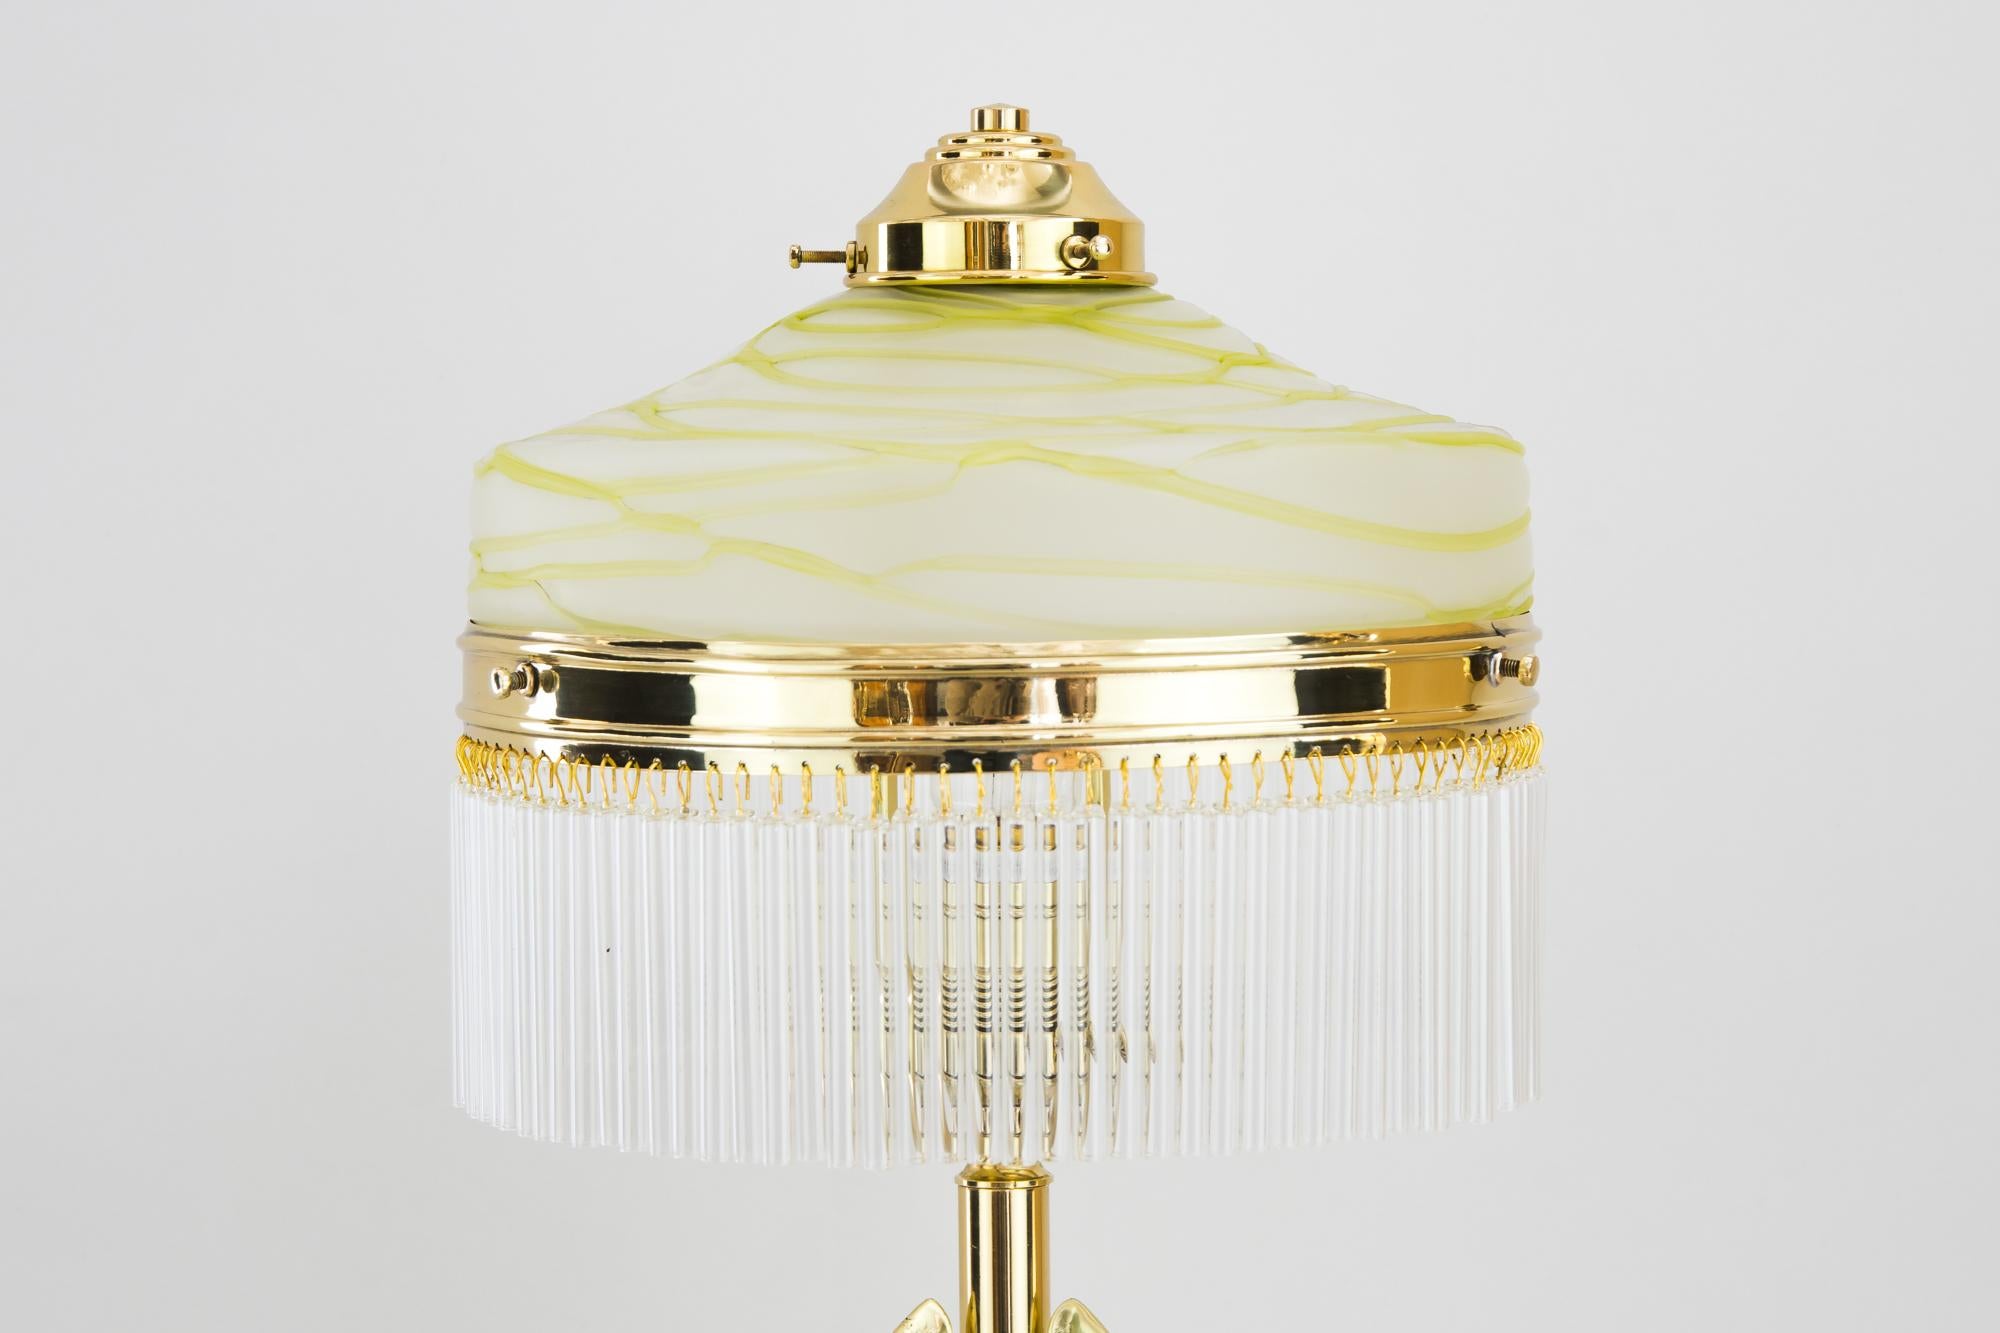 Austrian Jugendstil Table Lamp with Original 